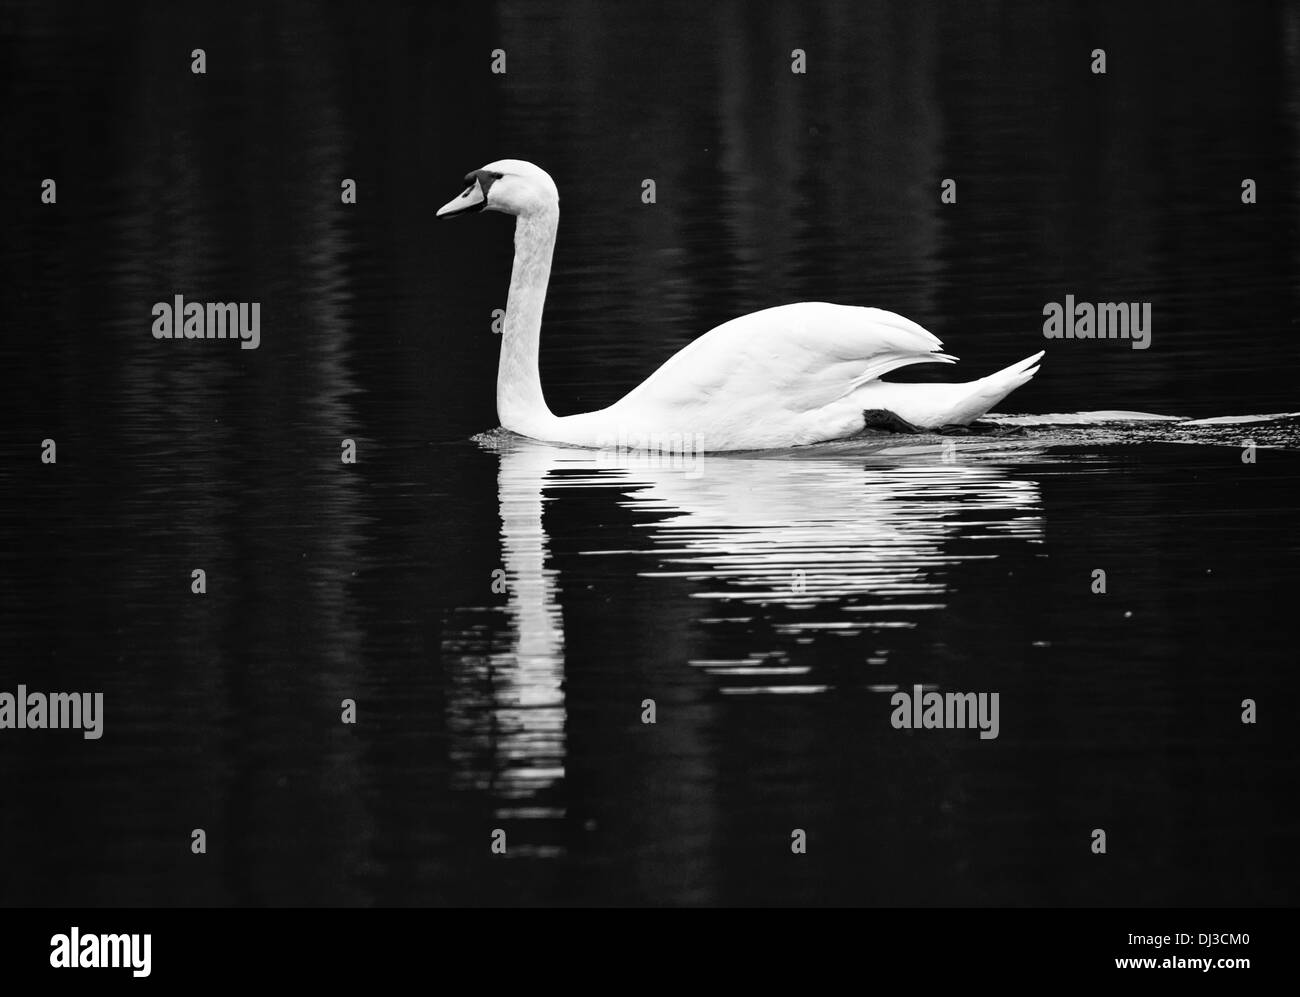 Mute swan in black & white Stock Photo